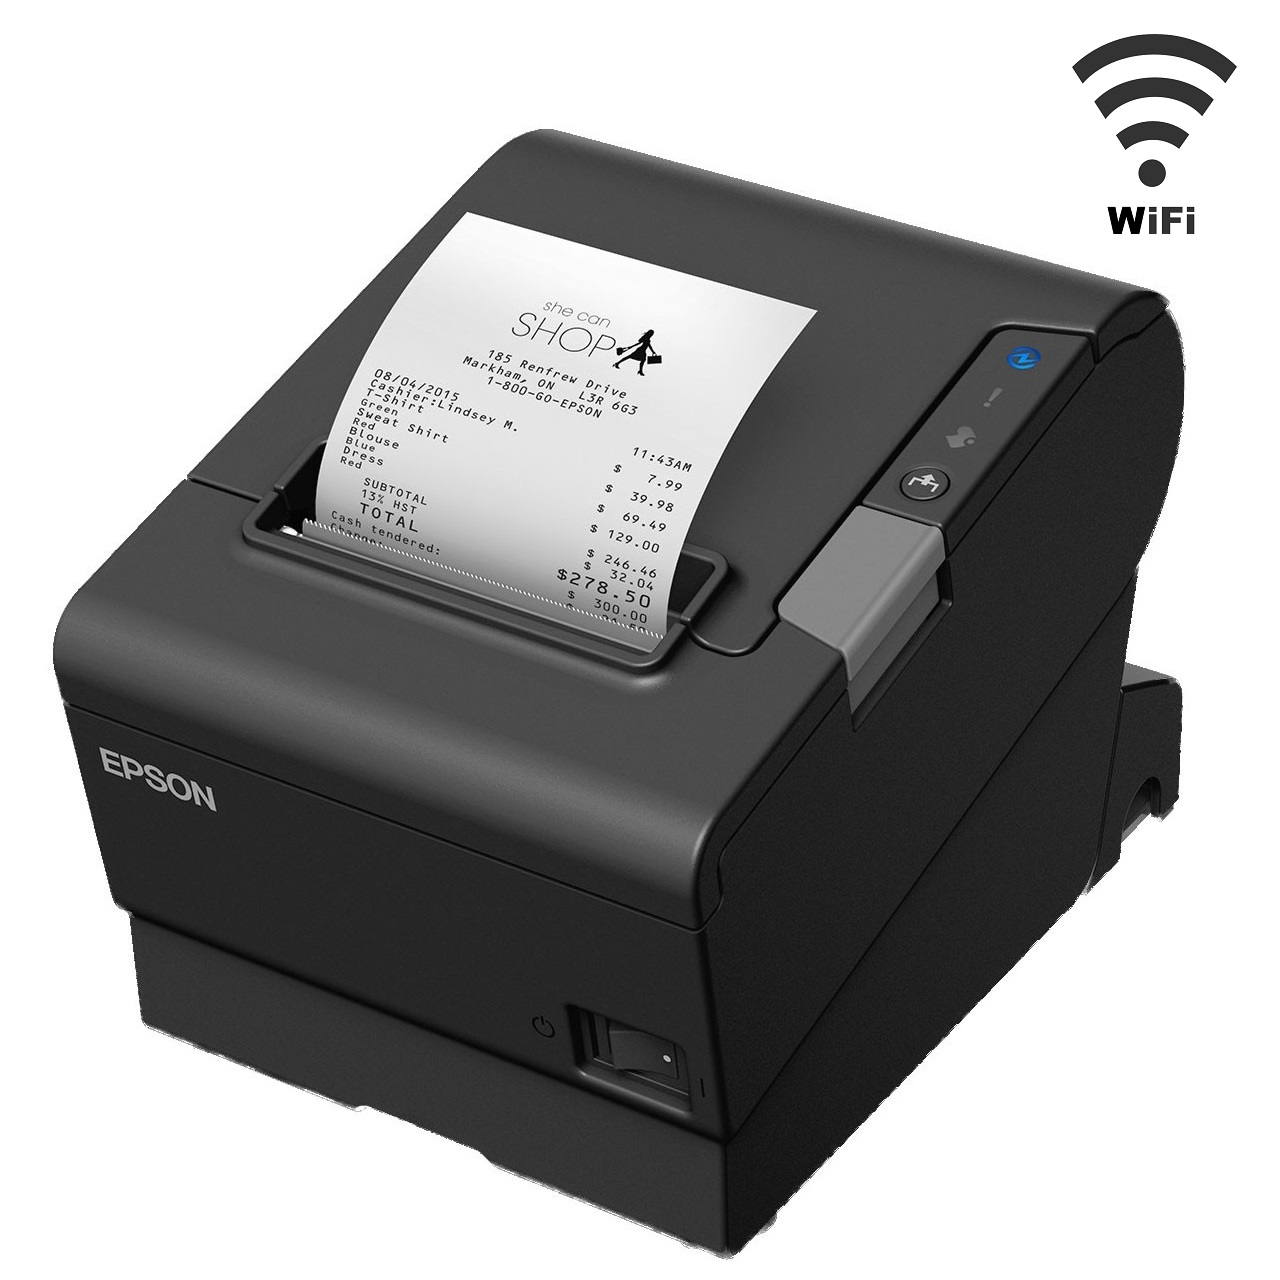 Epson TM-T88VI Wireless Thermal Receipt Printer